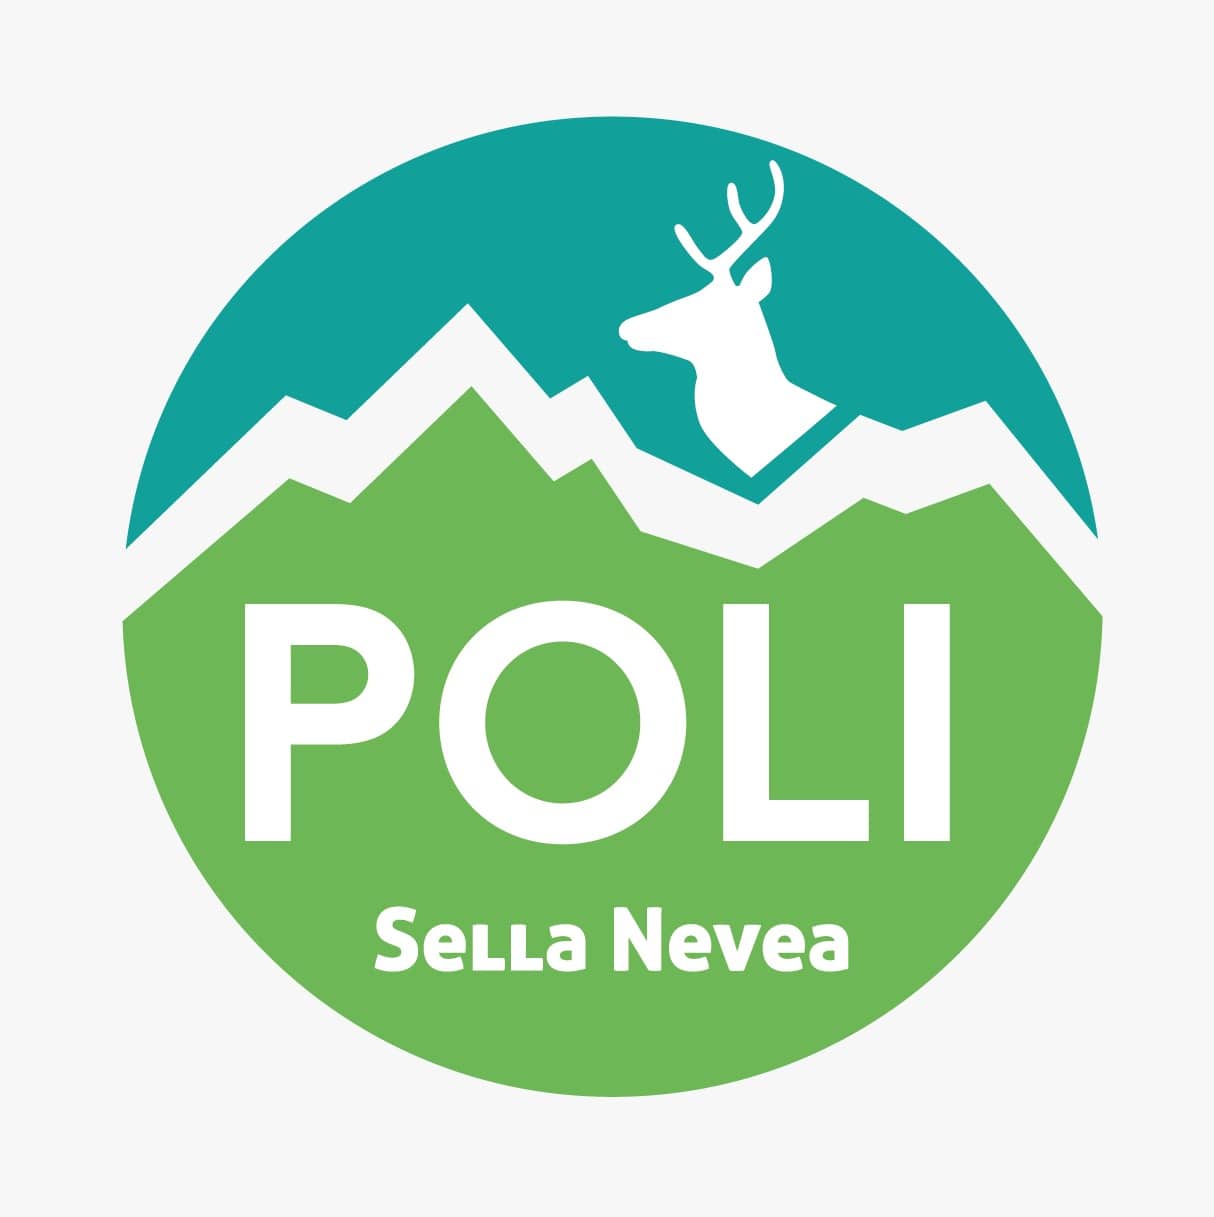 POLI - Sella Nevea